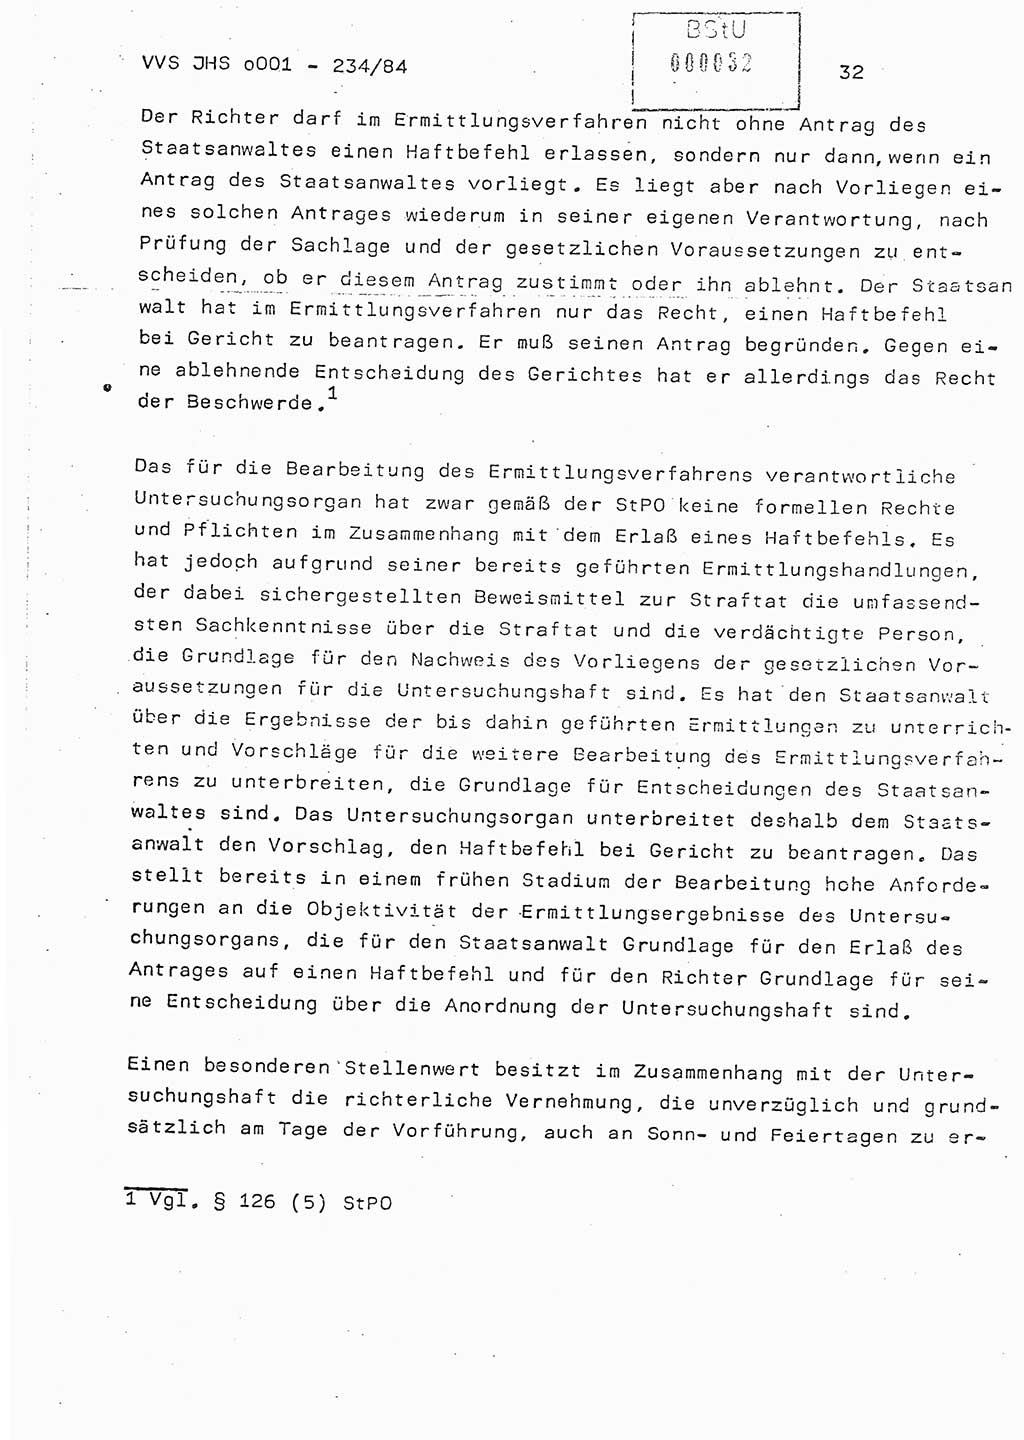 Dissertation Oberst Siegfried Rataizick (Abt. ⅩⅣ), Oberstleutnant Volkmar Heinz (Abt. ⅩⅣ), Oberstleutnant Werner Stein (HA Ⅸ), Hauptmann Heinz Conrad (JHS), Ministerium für Staatssicherheit (MfS) [Deutsche Demokratische Republik (DDR)], Juristische Hochschule (JHS), Vertrauliche Verschlußsache (VVS) o001-234/84, Potsdam 1984, Seite 32 (Diss. MfS DDR JHS VVS o001-234/84 1984, S. 32)